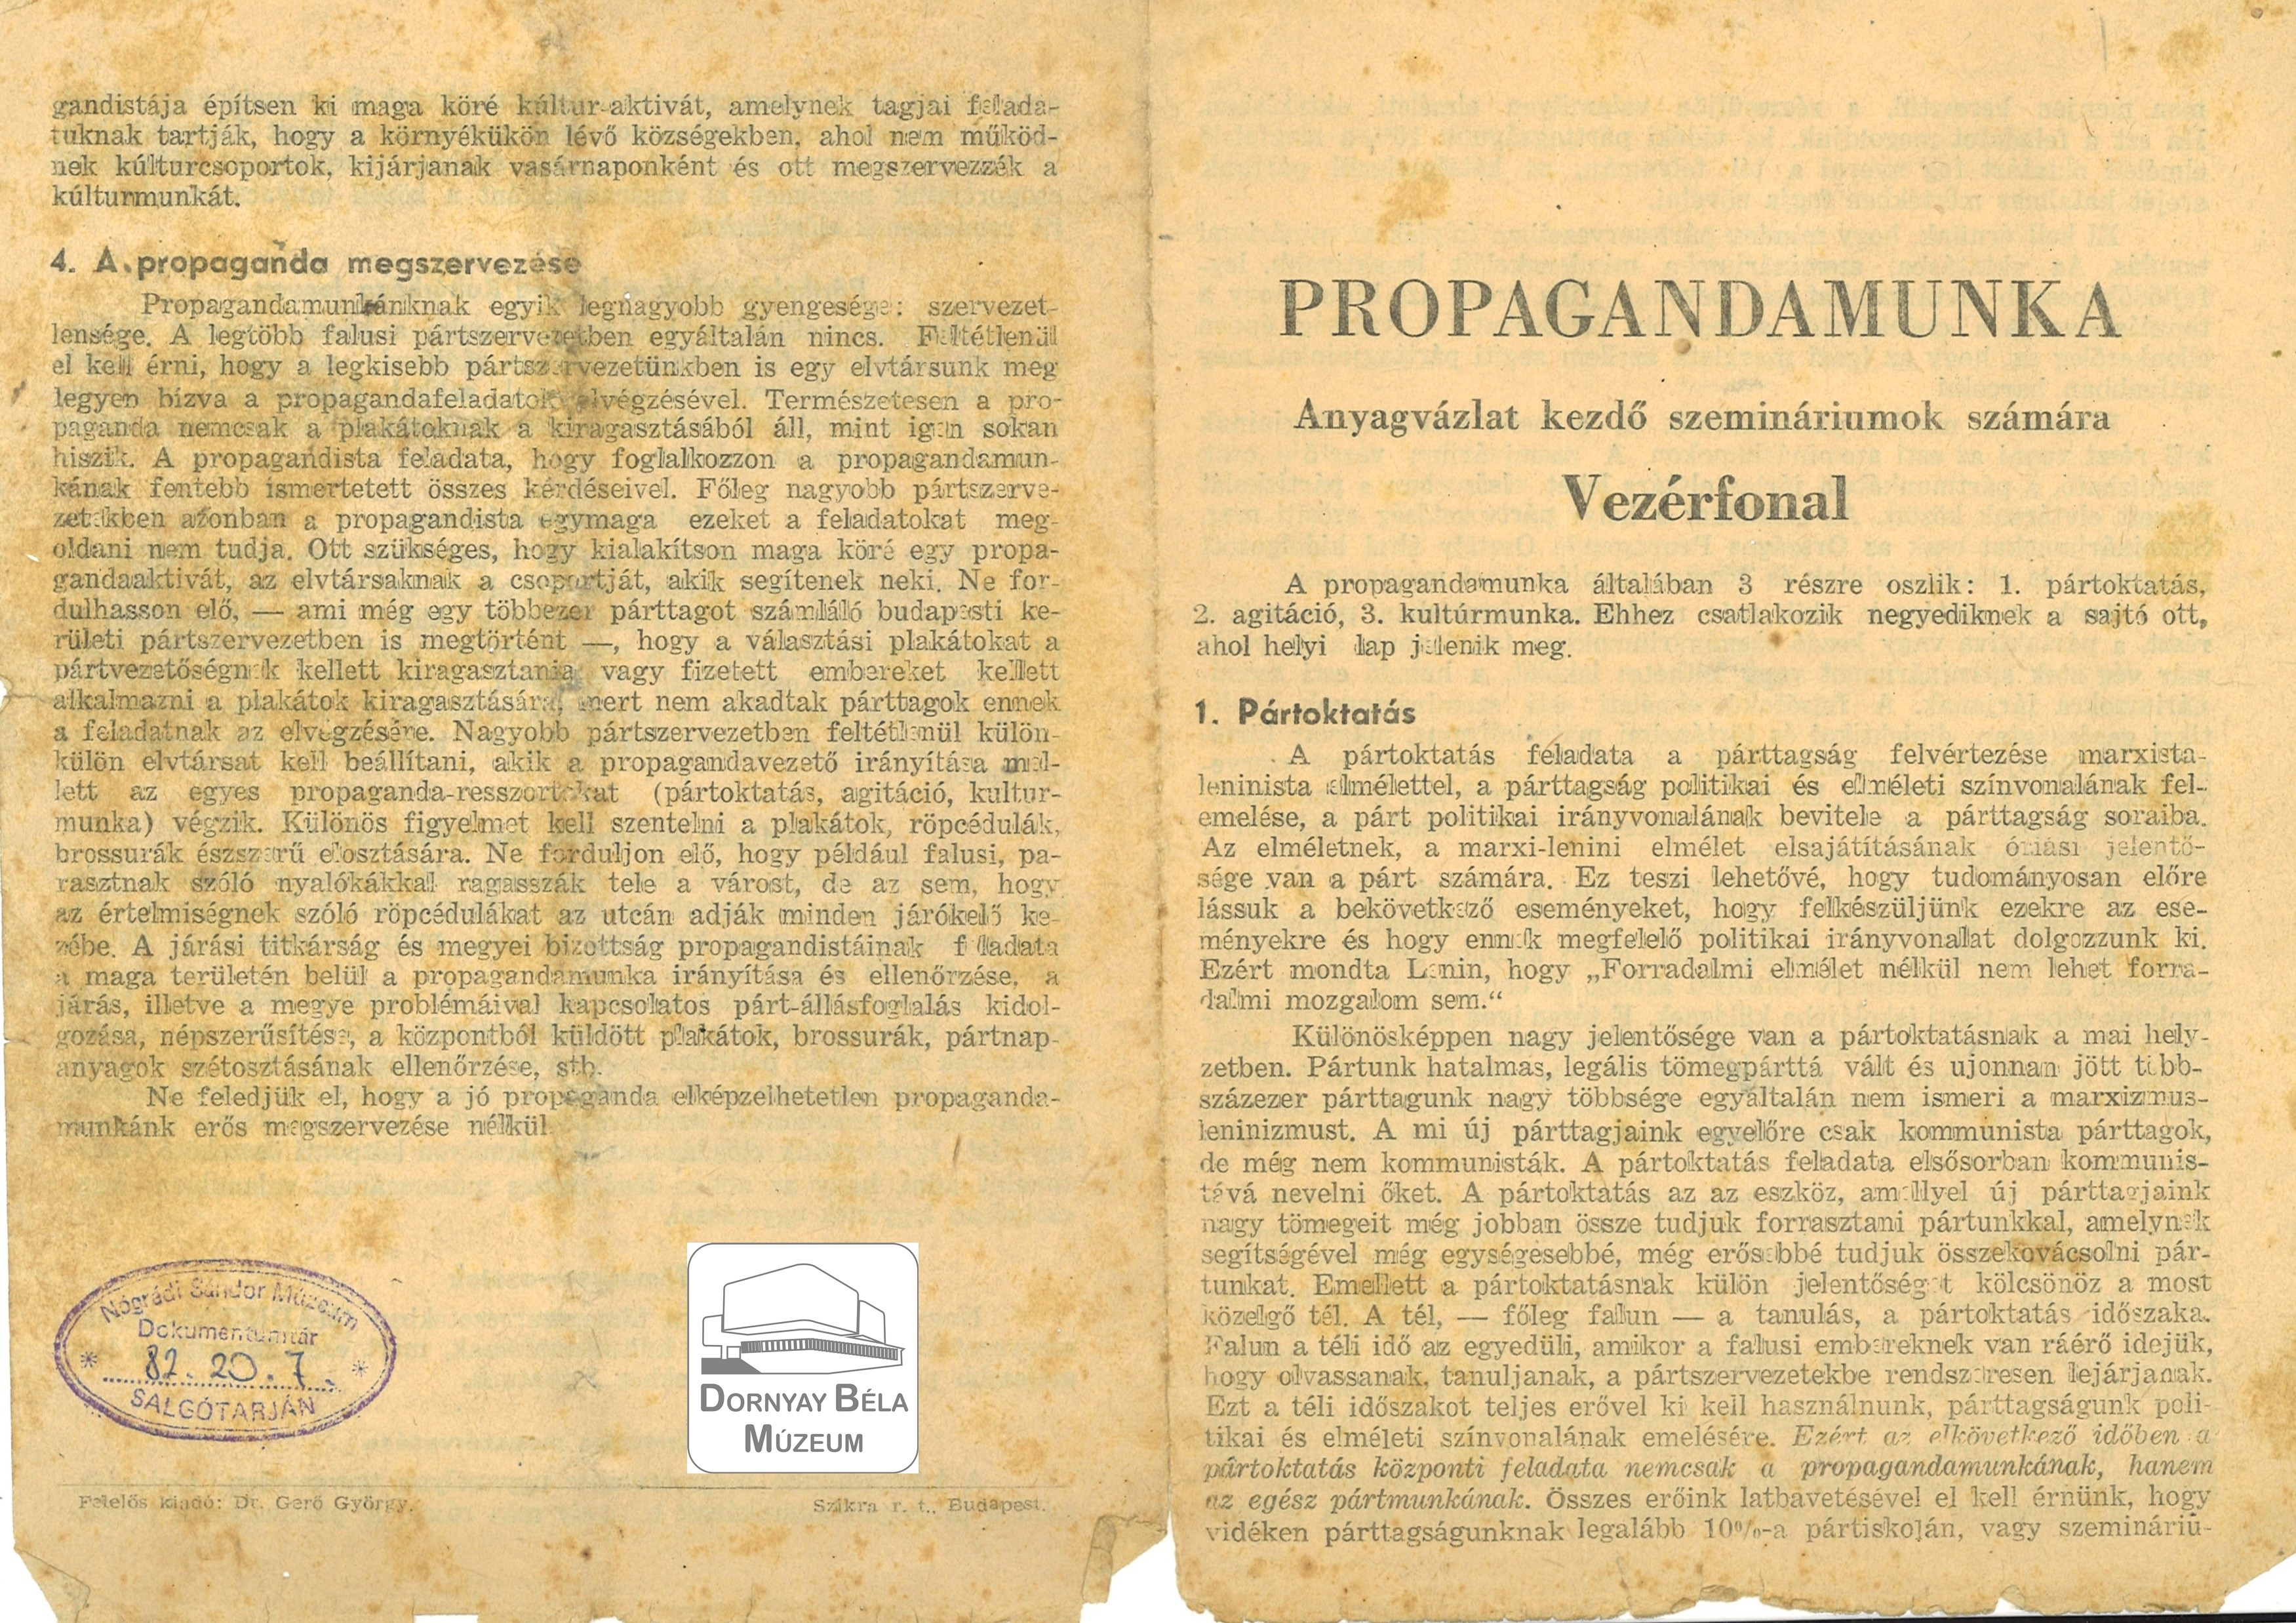 Propaganda munka – Anyag vázlat kezdő szemináriumok számára. (Dornyay Béla Múzeum, Salgótarján CC BY-NC-SA)